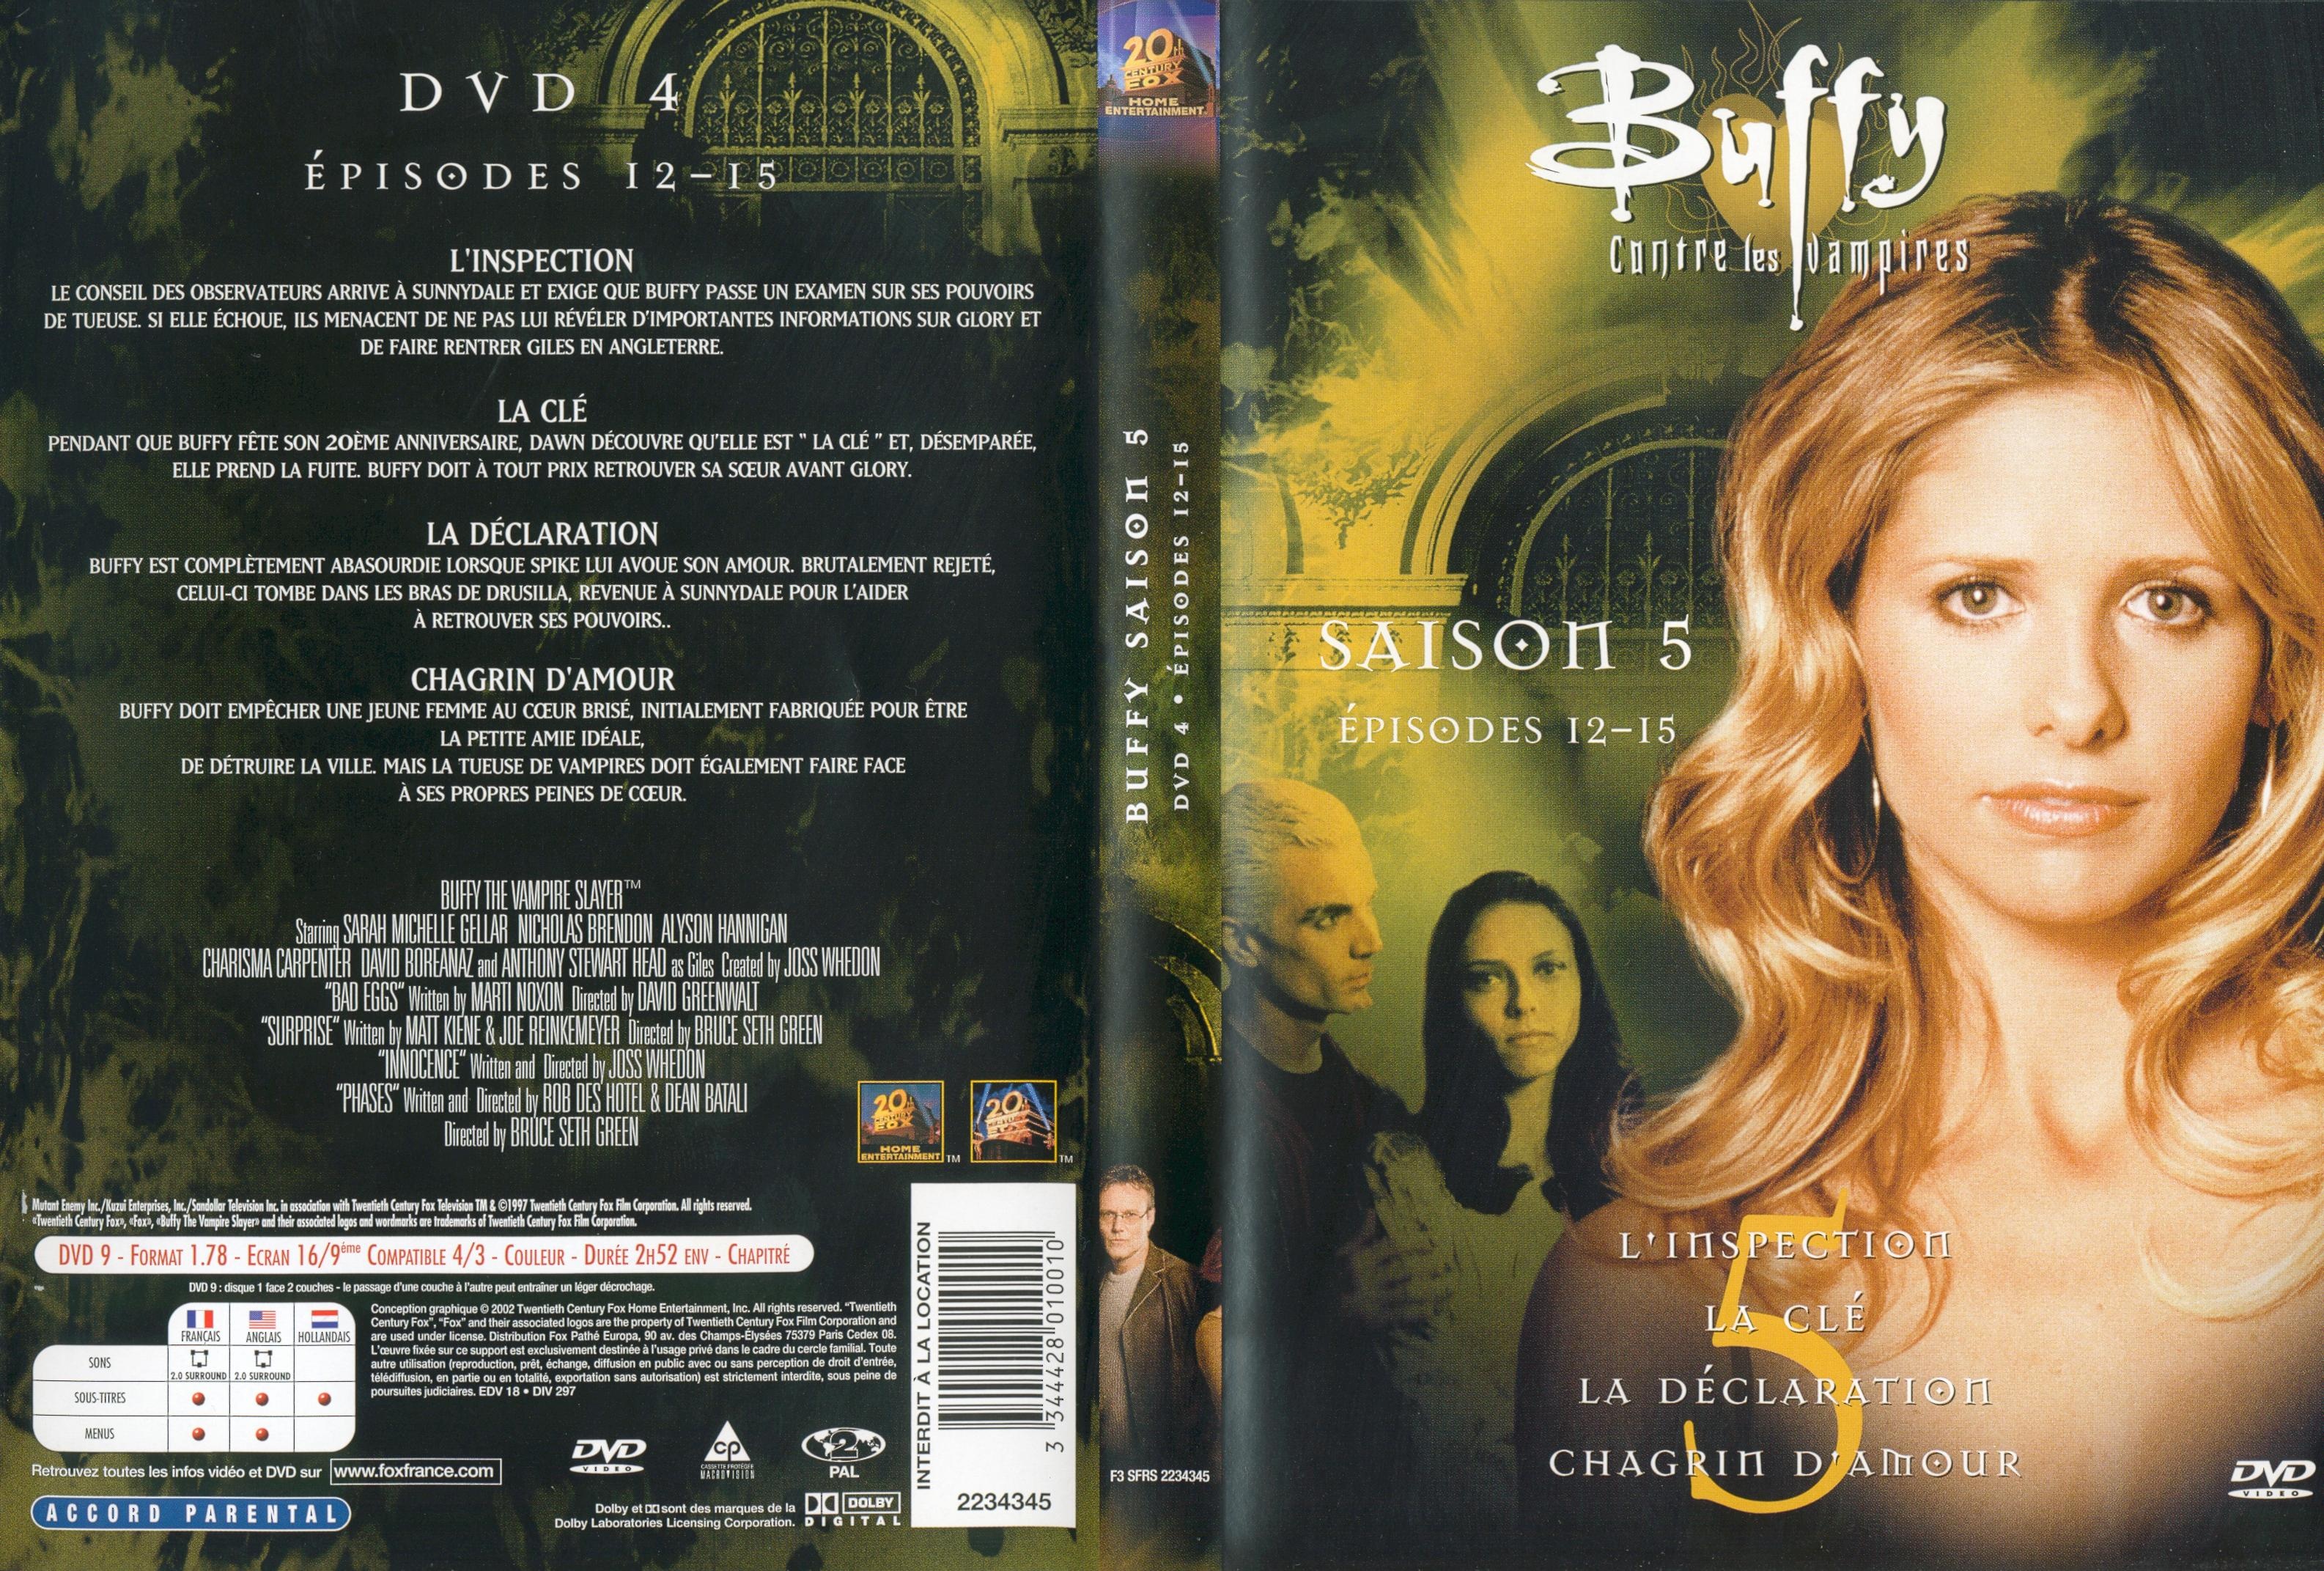 Jaquette DVD Buffy contre les vampires Saison 5 DVD 4